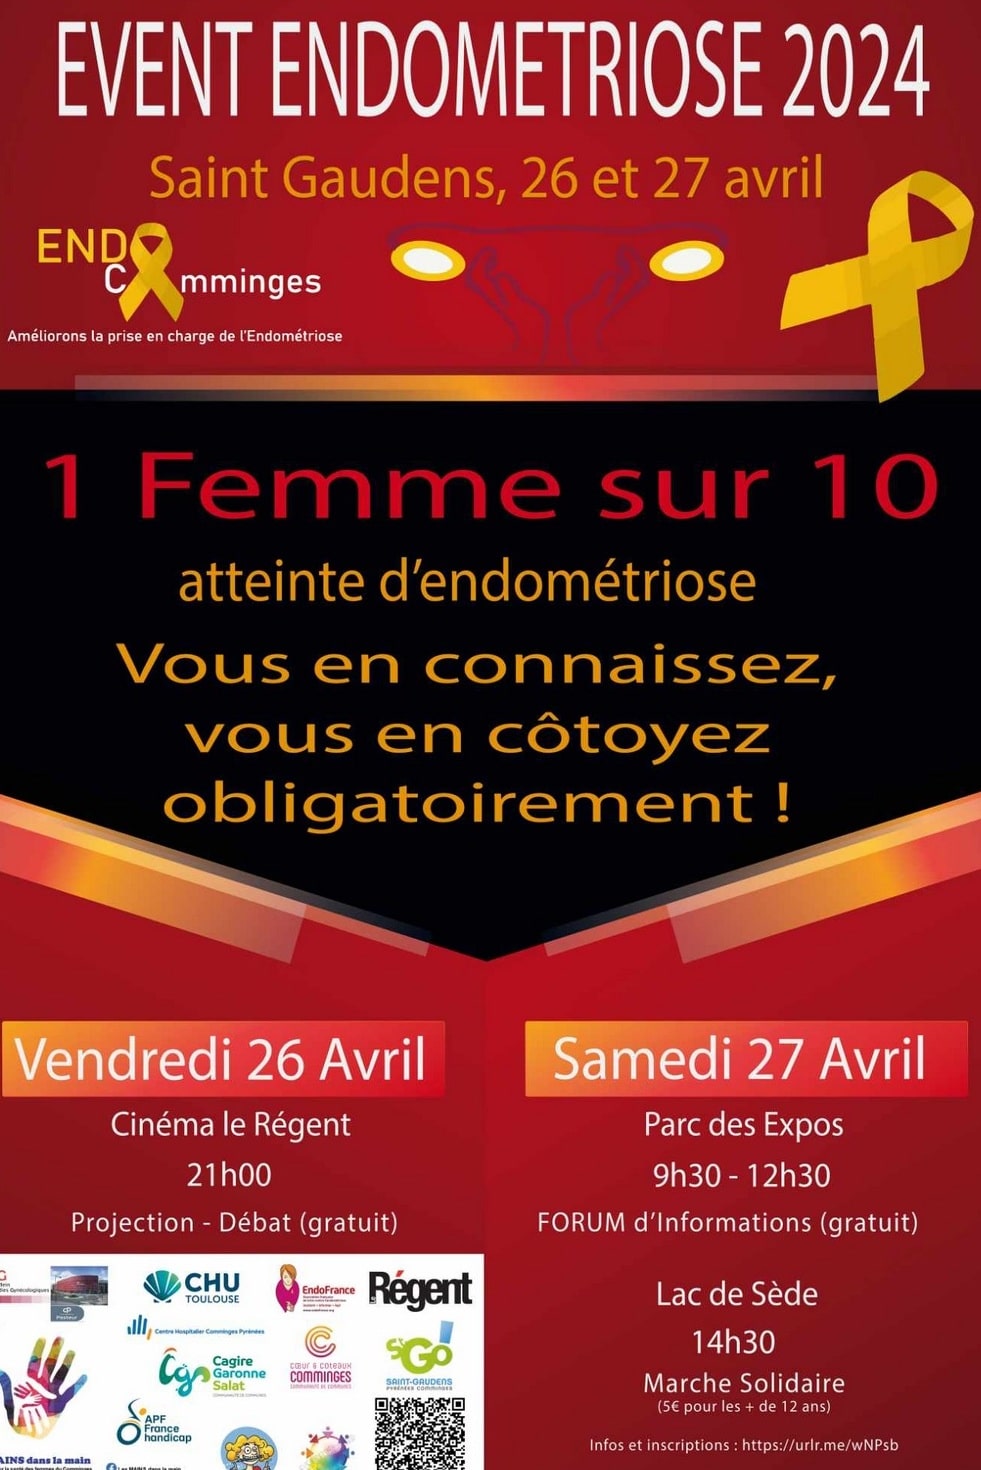 Saint-Gaudens: two days to learn about endometriosis – petiterepublique.com